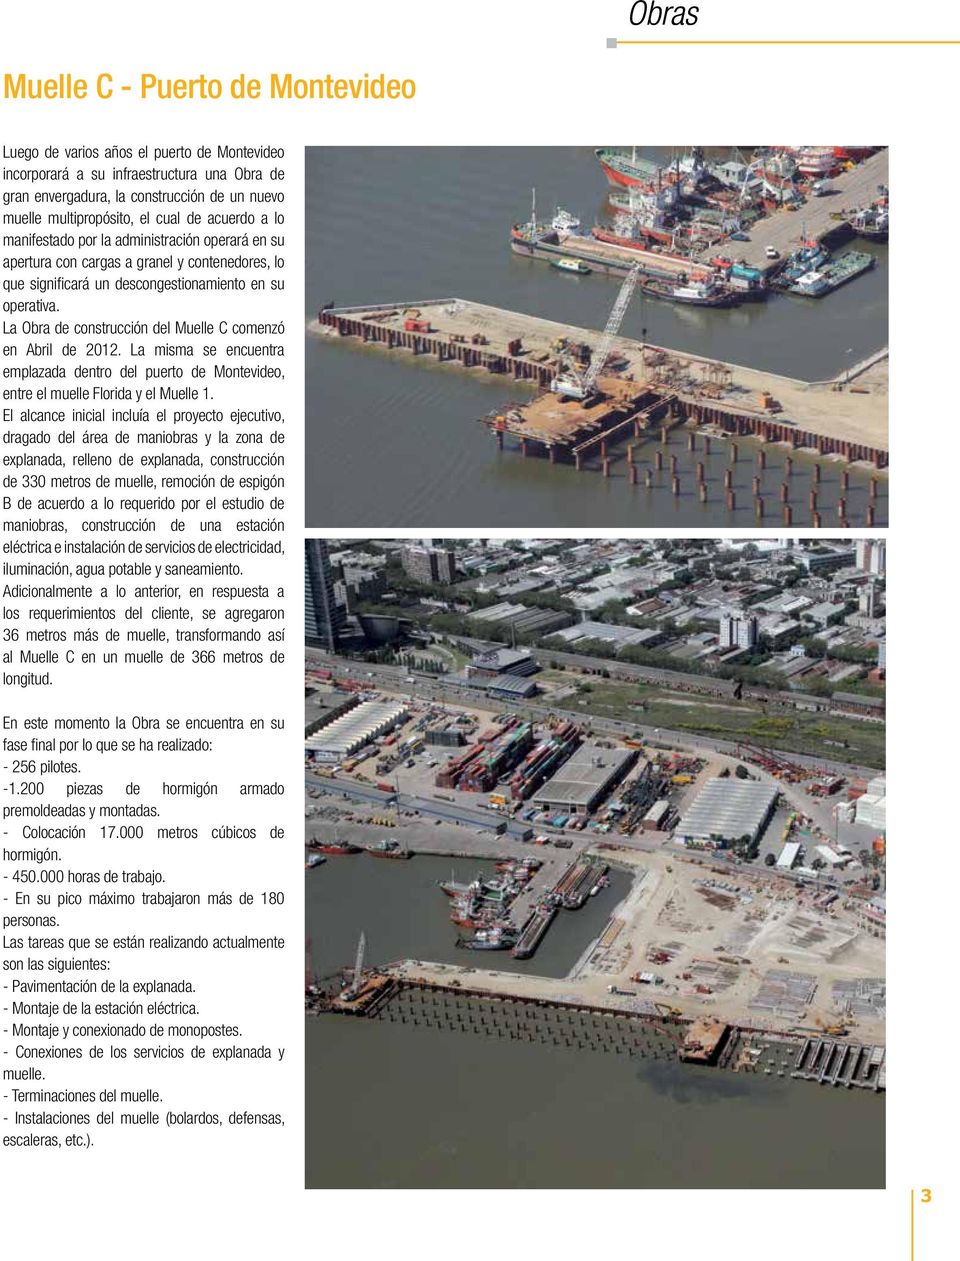 La Obra de construcción del Muelle C comenzó en Abril de 2012. La misma se encuentra emplazada dentro del puerto de Montevideo, entre el muelle Florida y el Muelle 1.